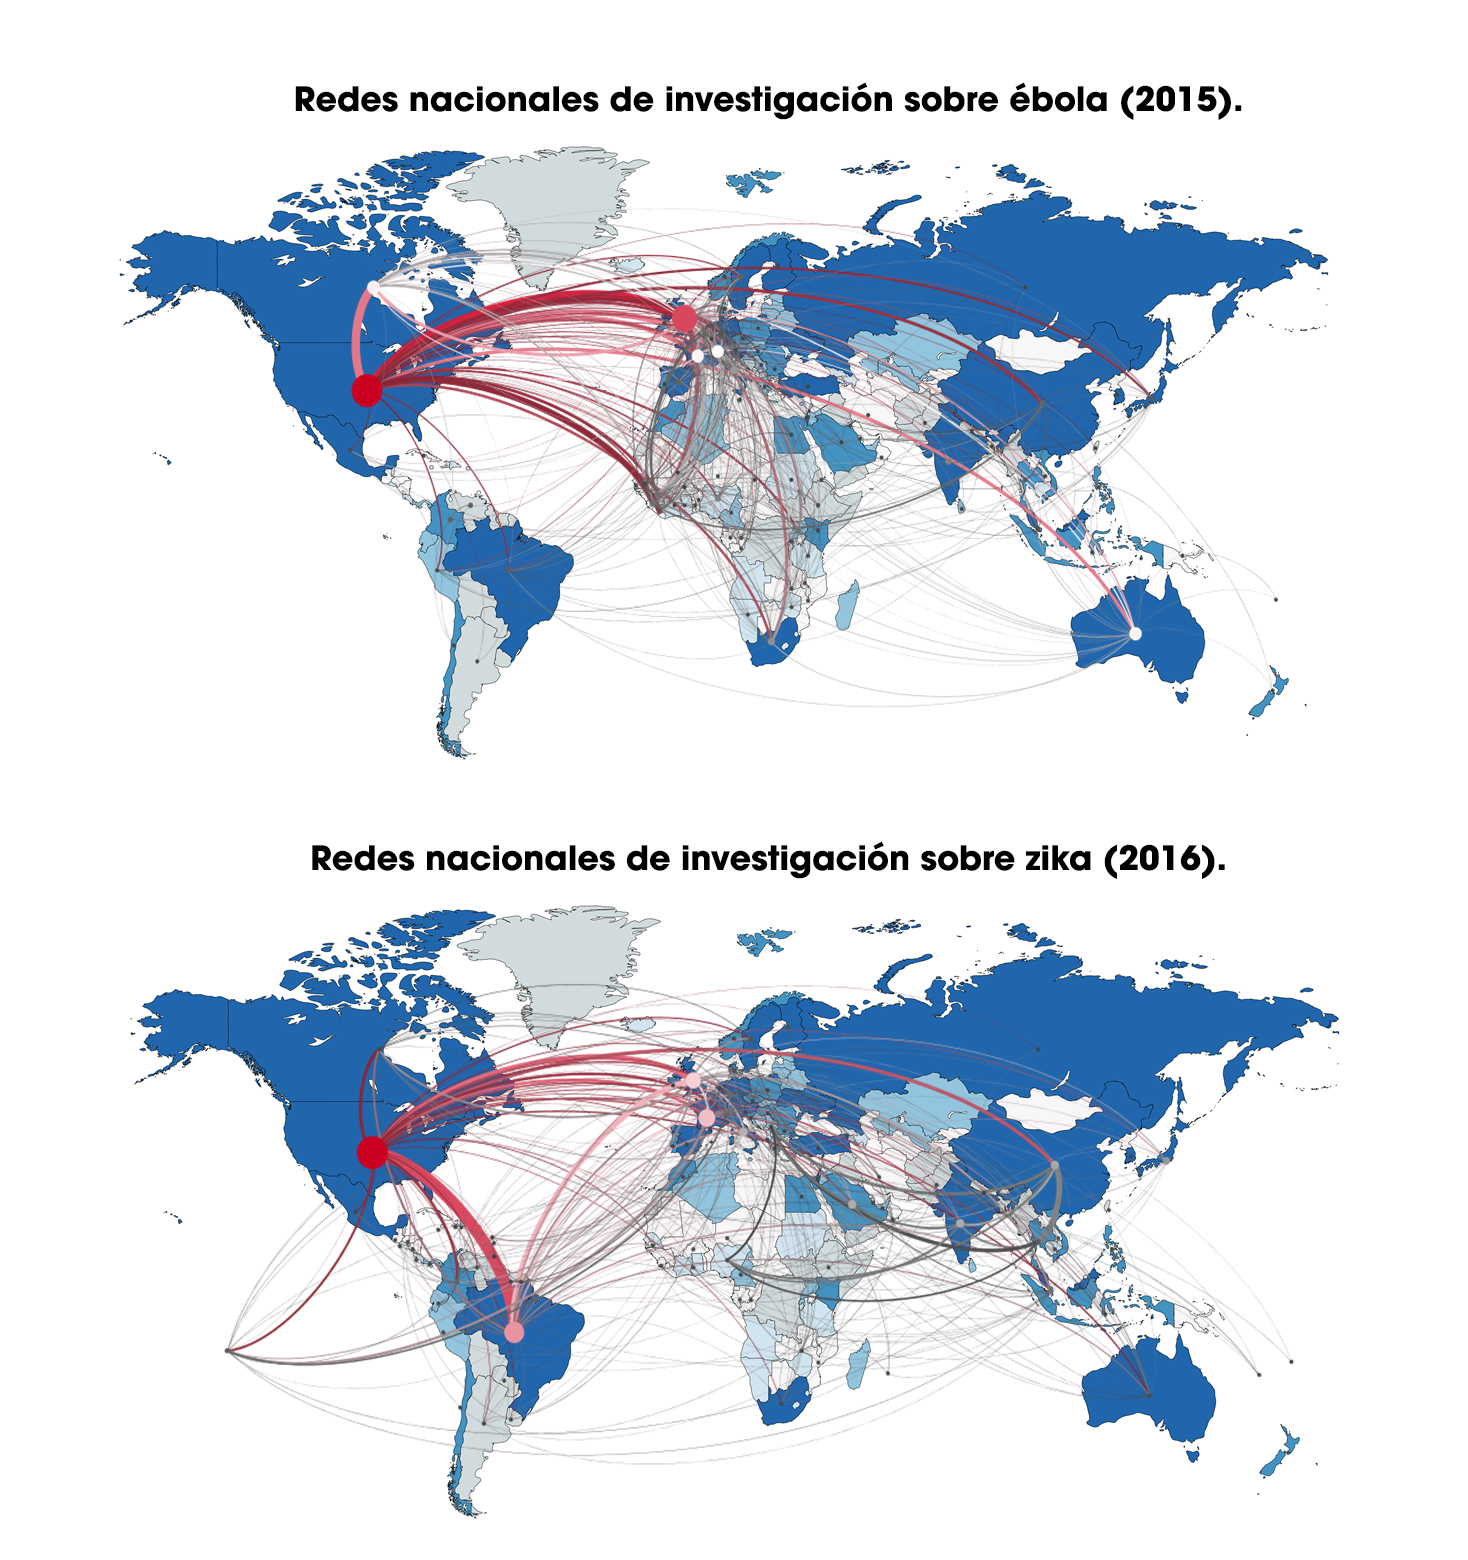 Redes nacionales de investigación sobre ébola y zika v2